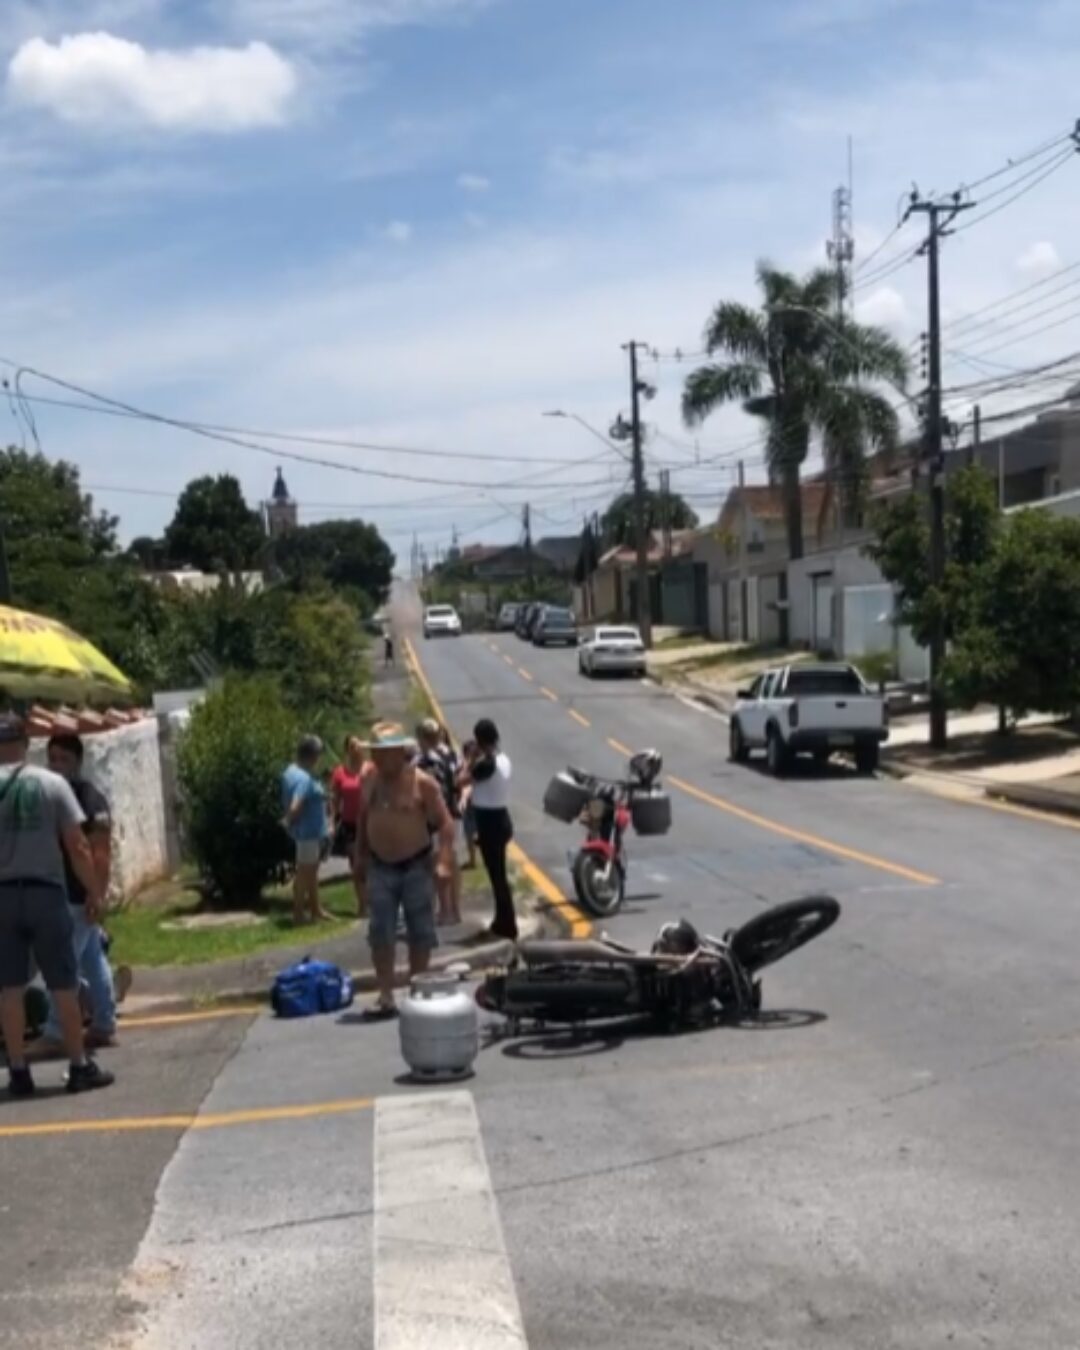 Van escolar colide com moto no bairro Fonte Nova